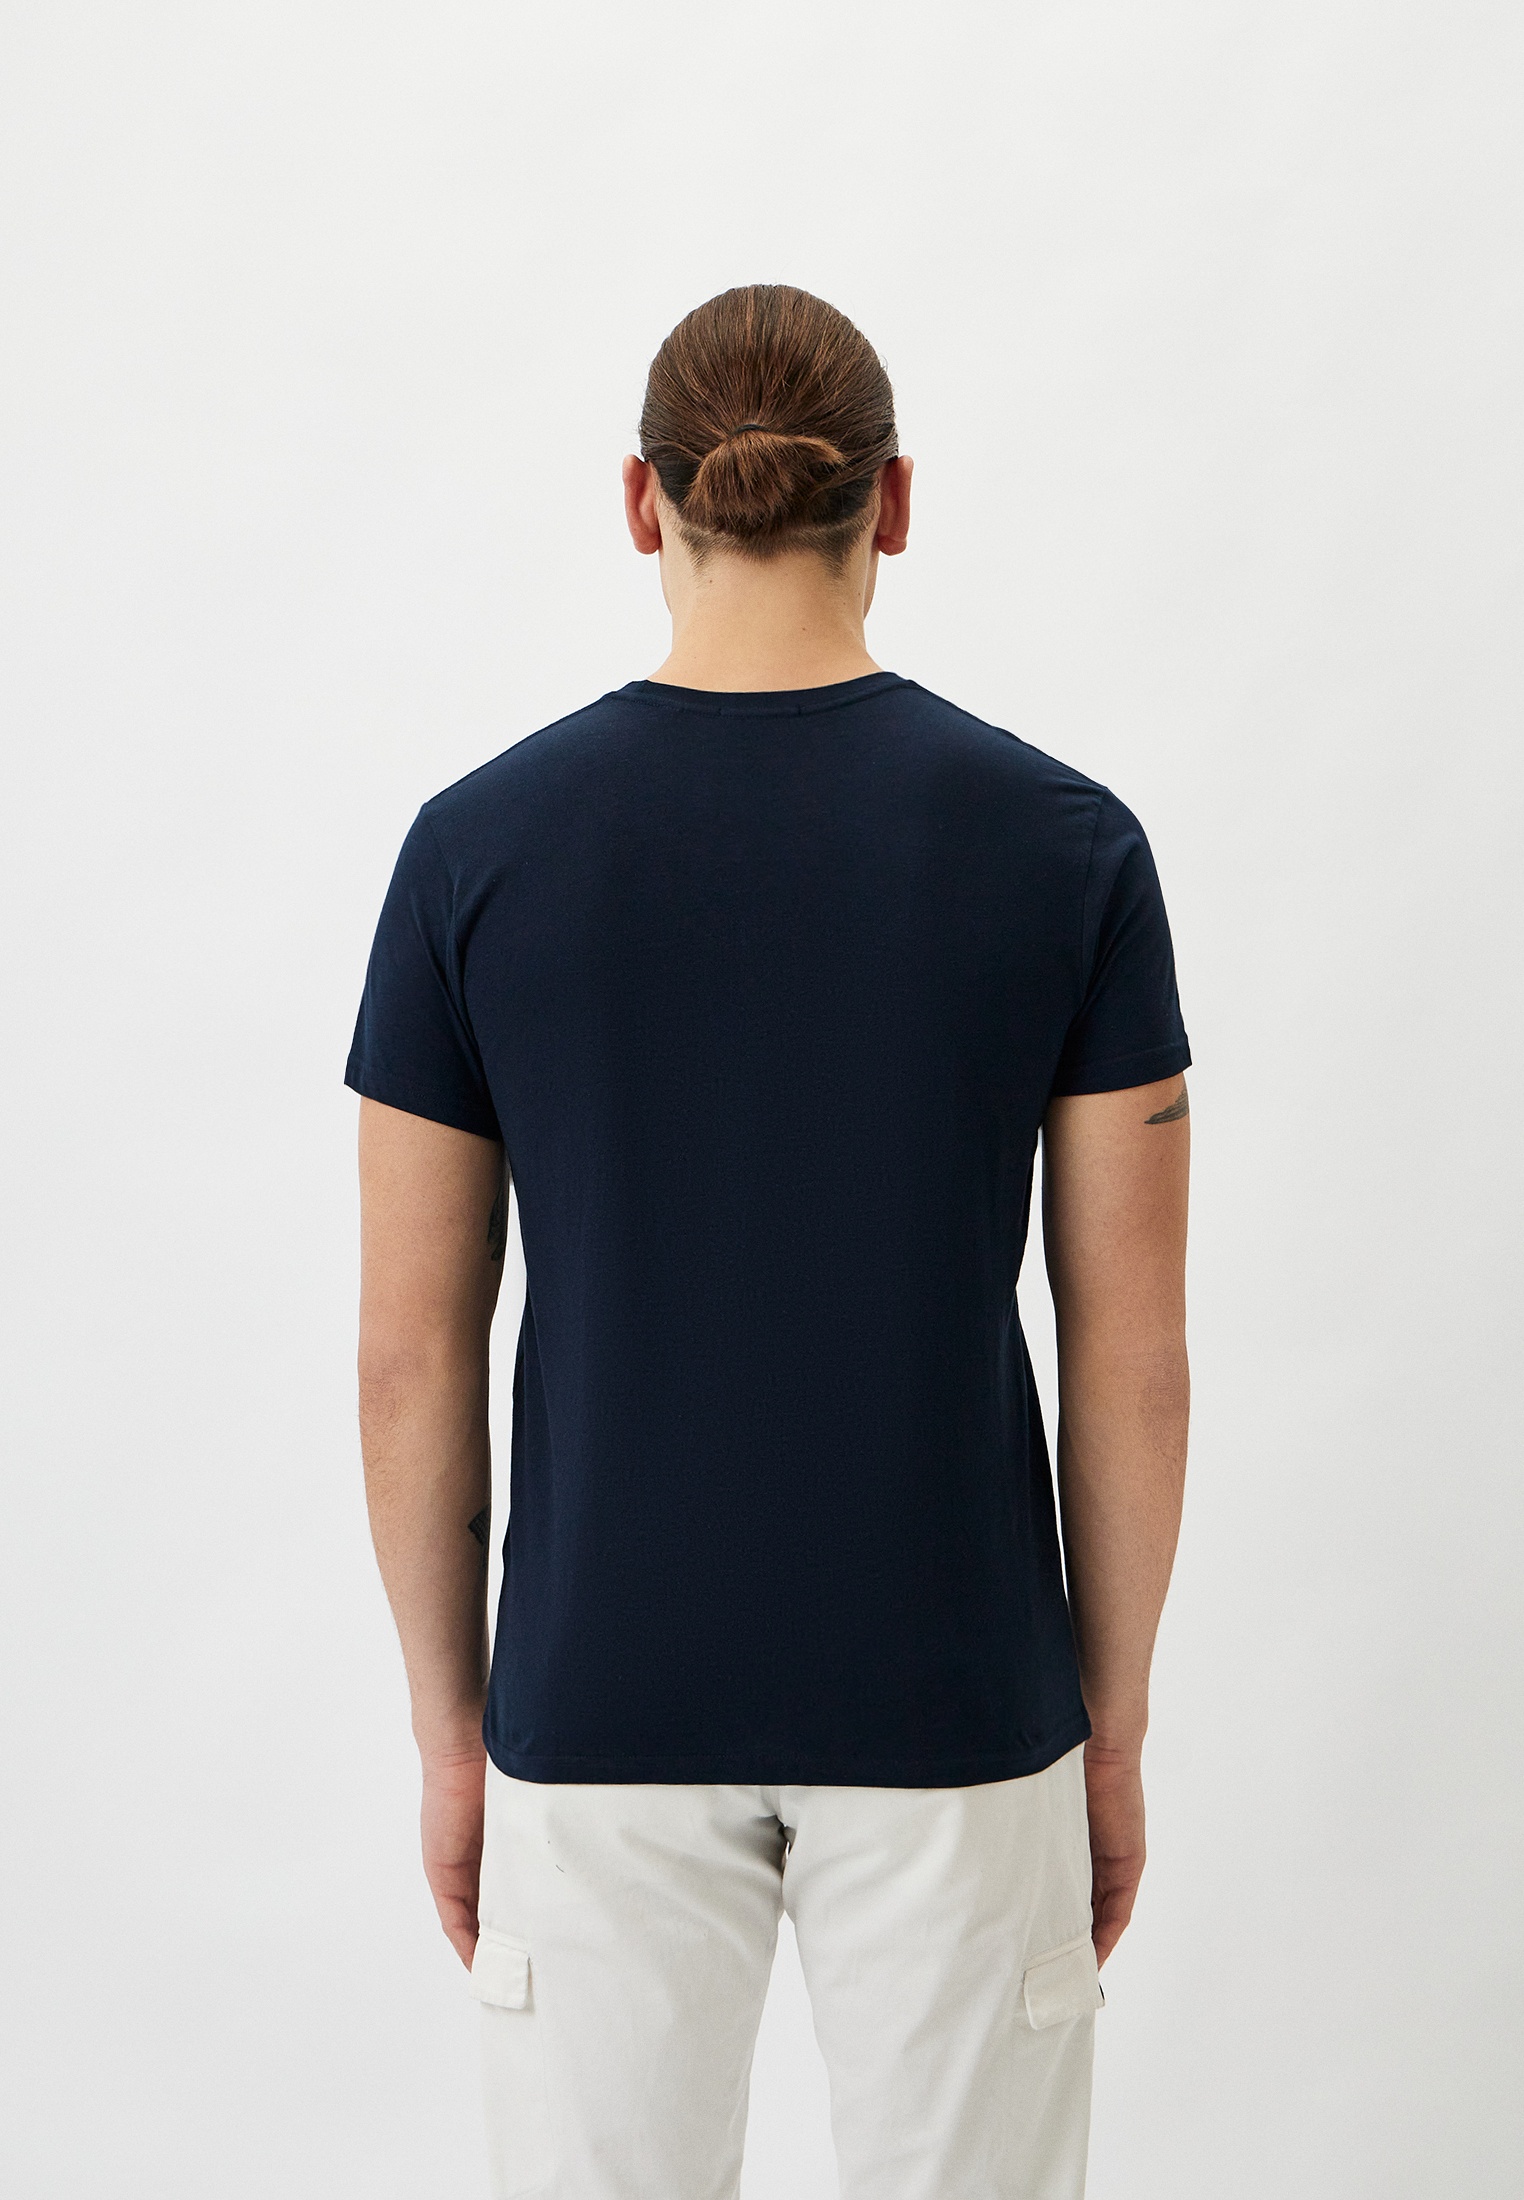 Мужская футболка Baldinini (Балдинини) B-OLM-M018: изображение 3